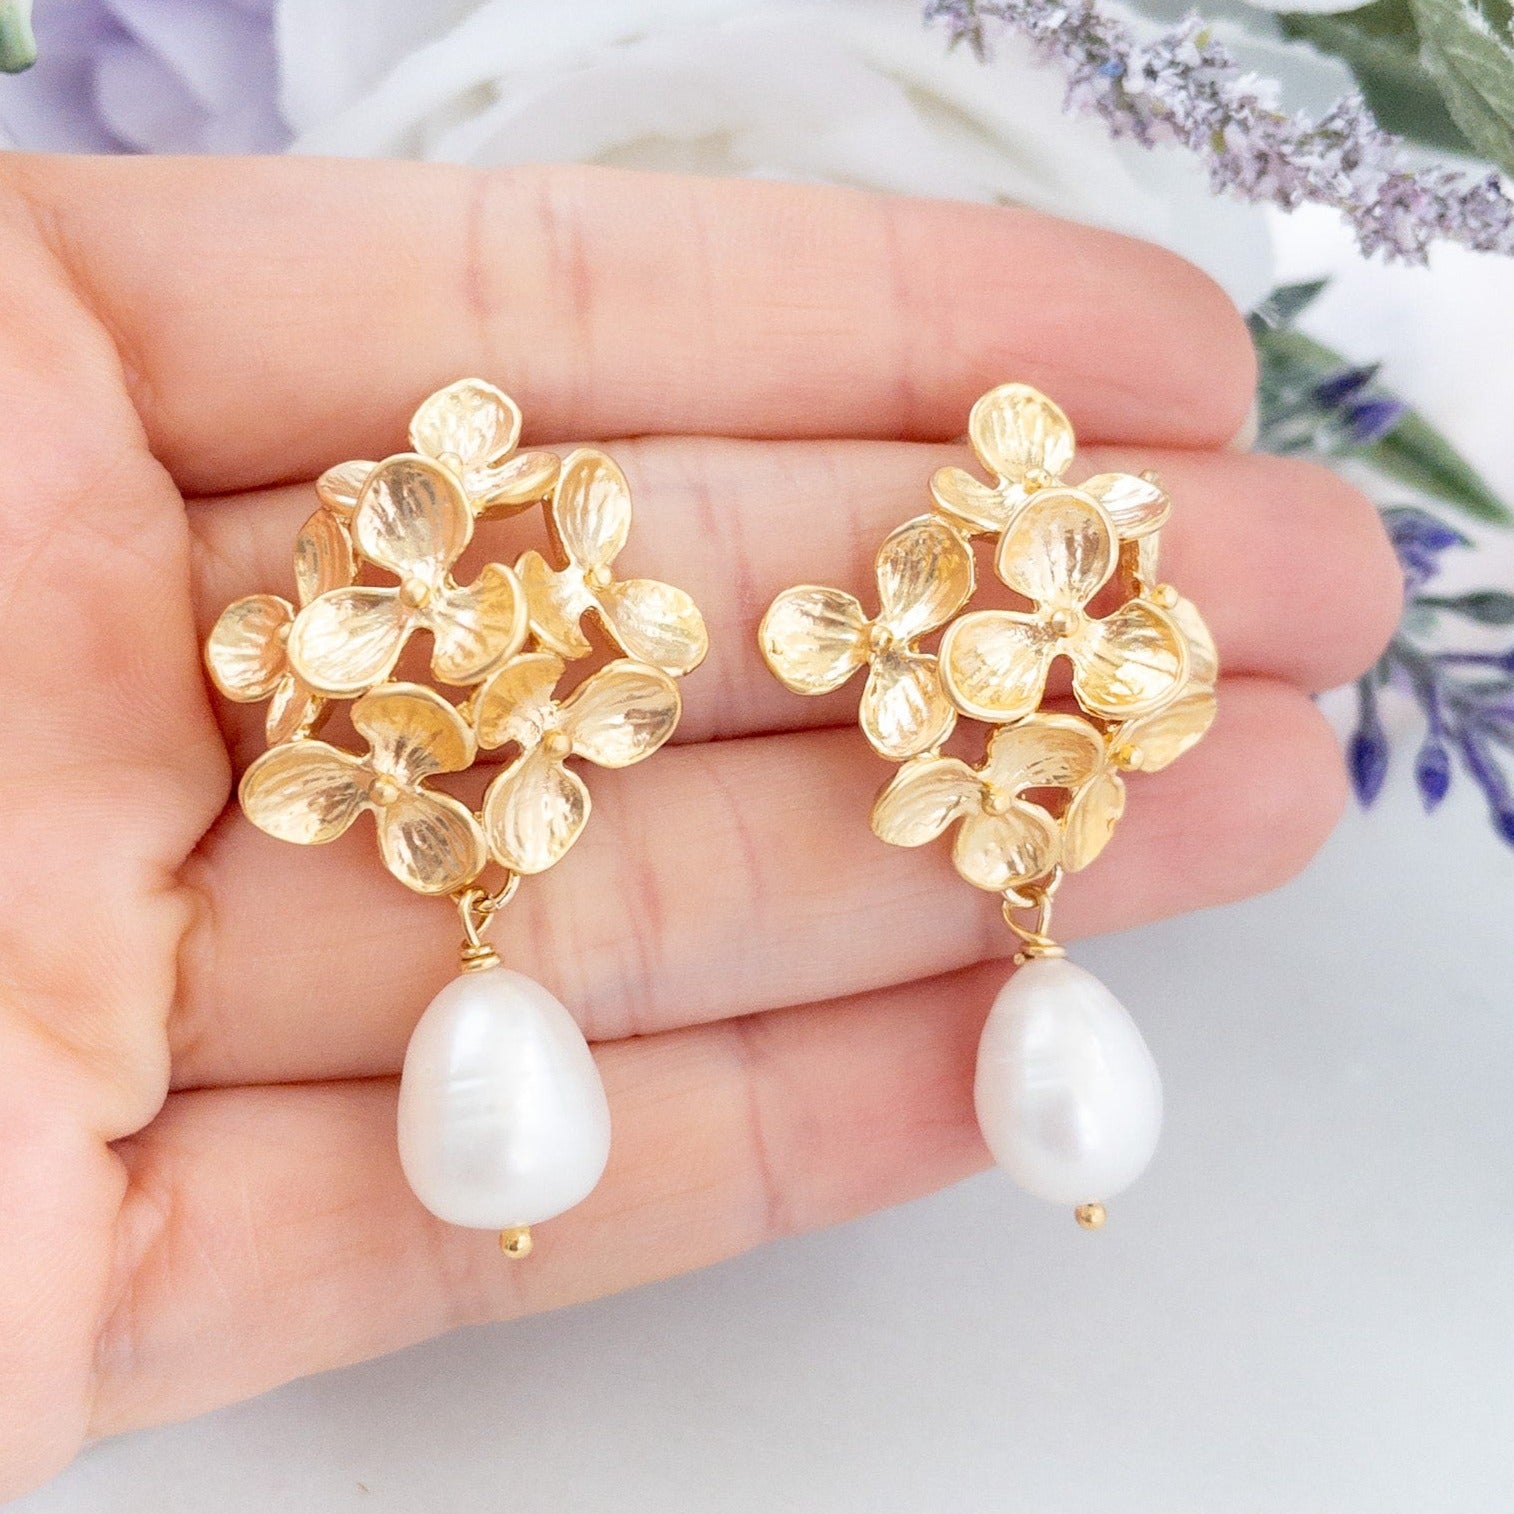 Gold hydrangea flower earrings with pearls